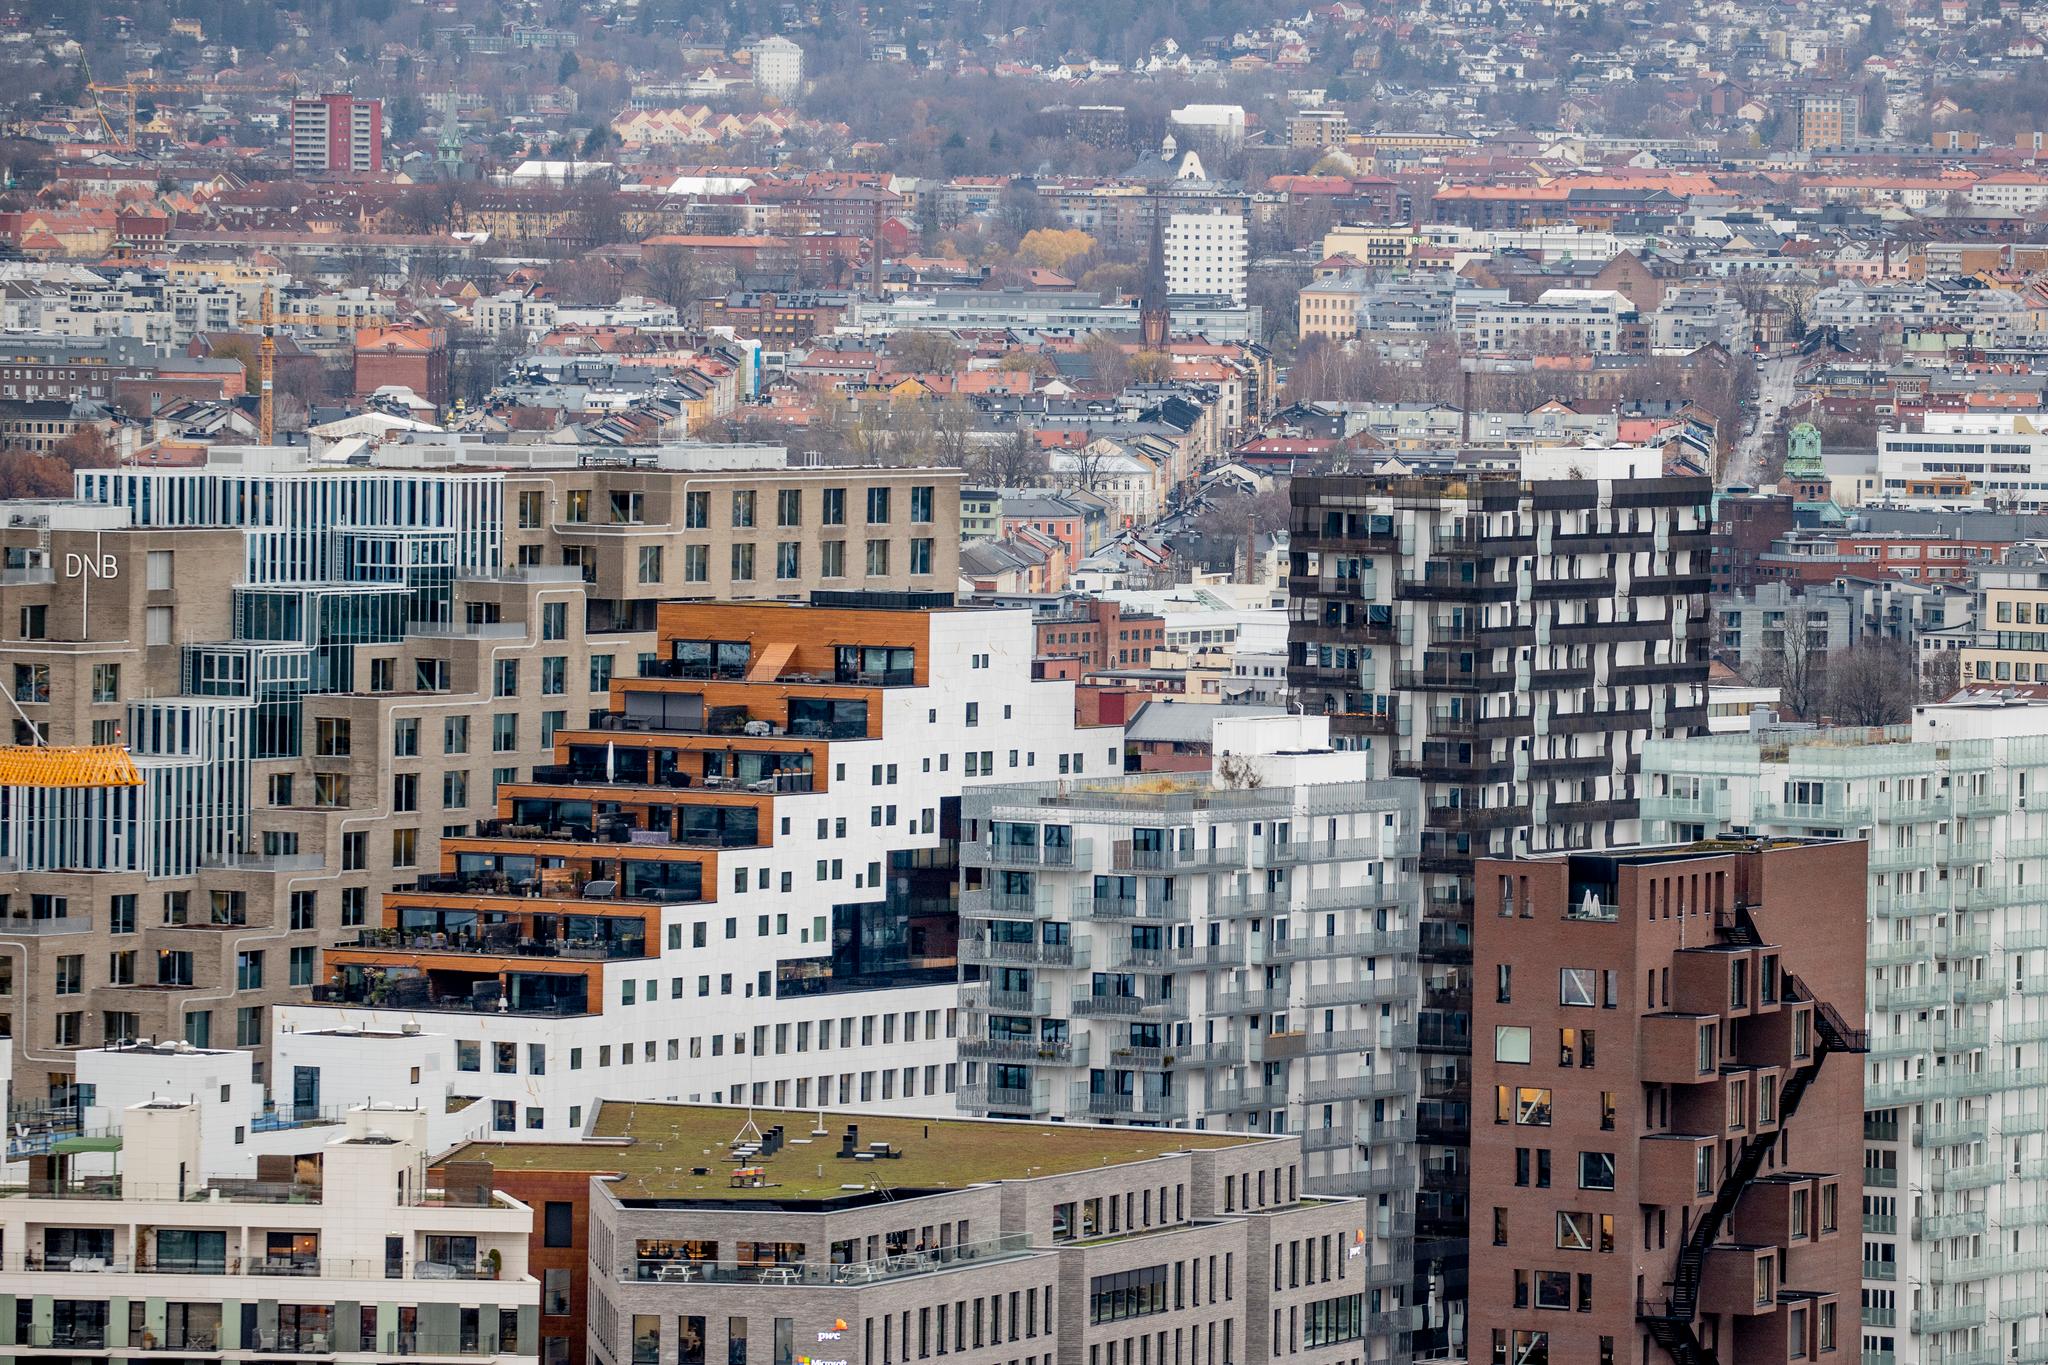 Hytte i byen? Det vil stadig flere ha, ifølge meglere. Byrådet i Oslo er bekymret for tomme leiligheter i en by som skriker etter boliger.